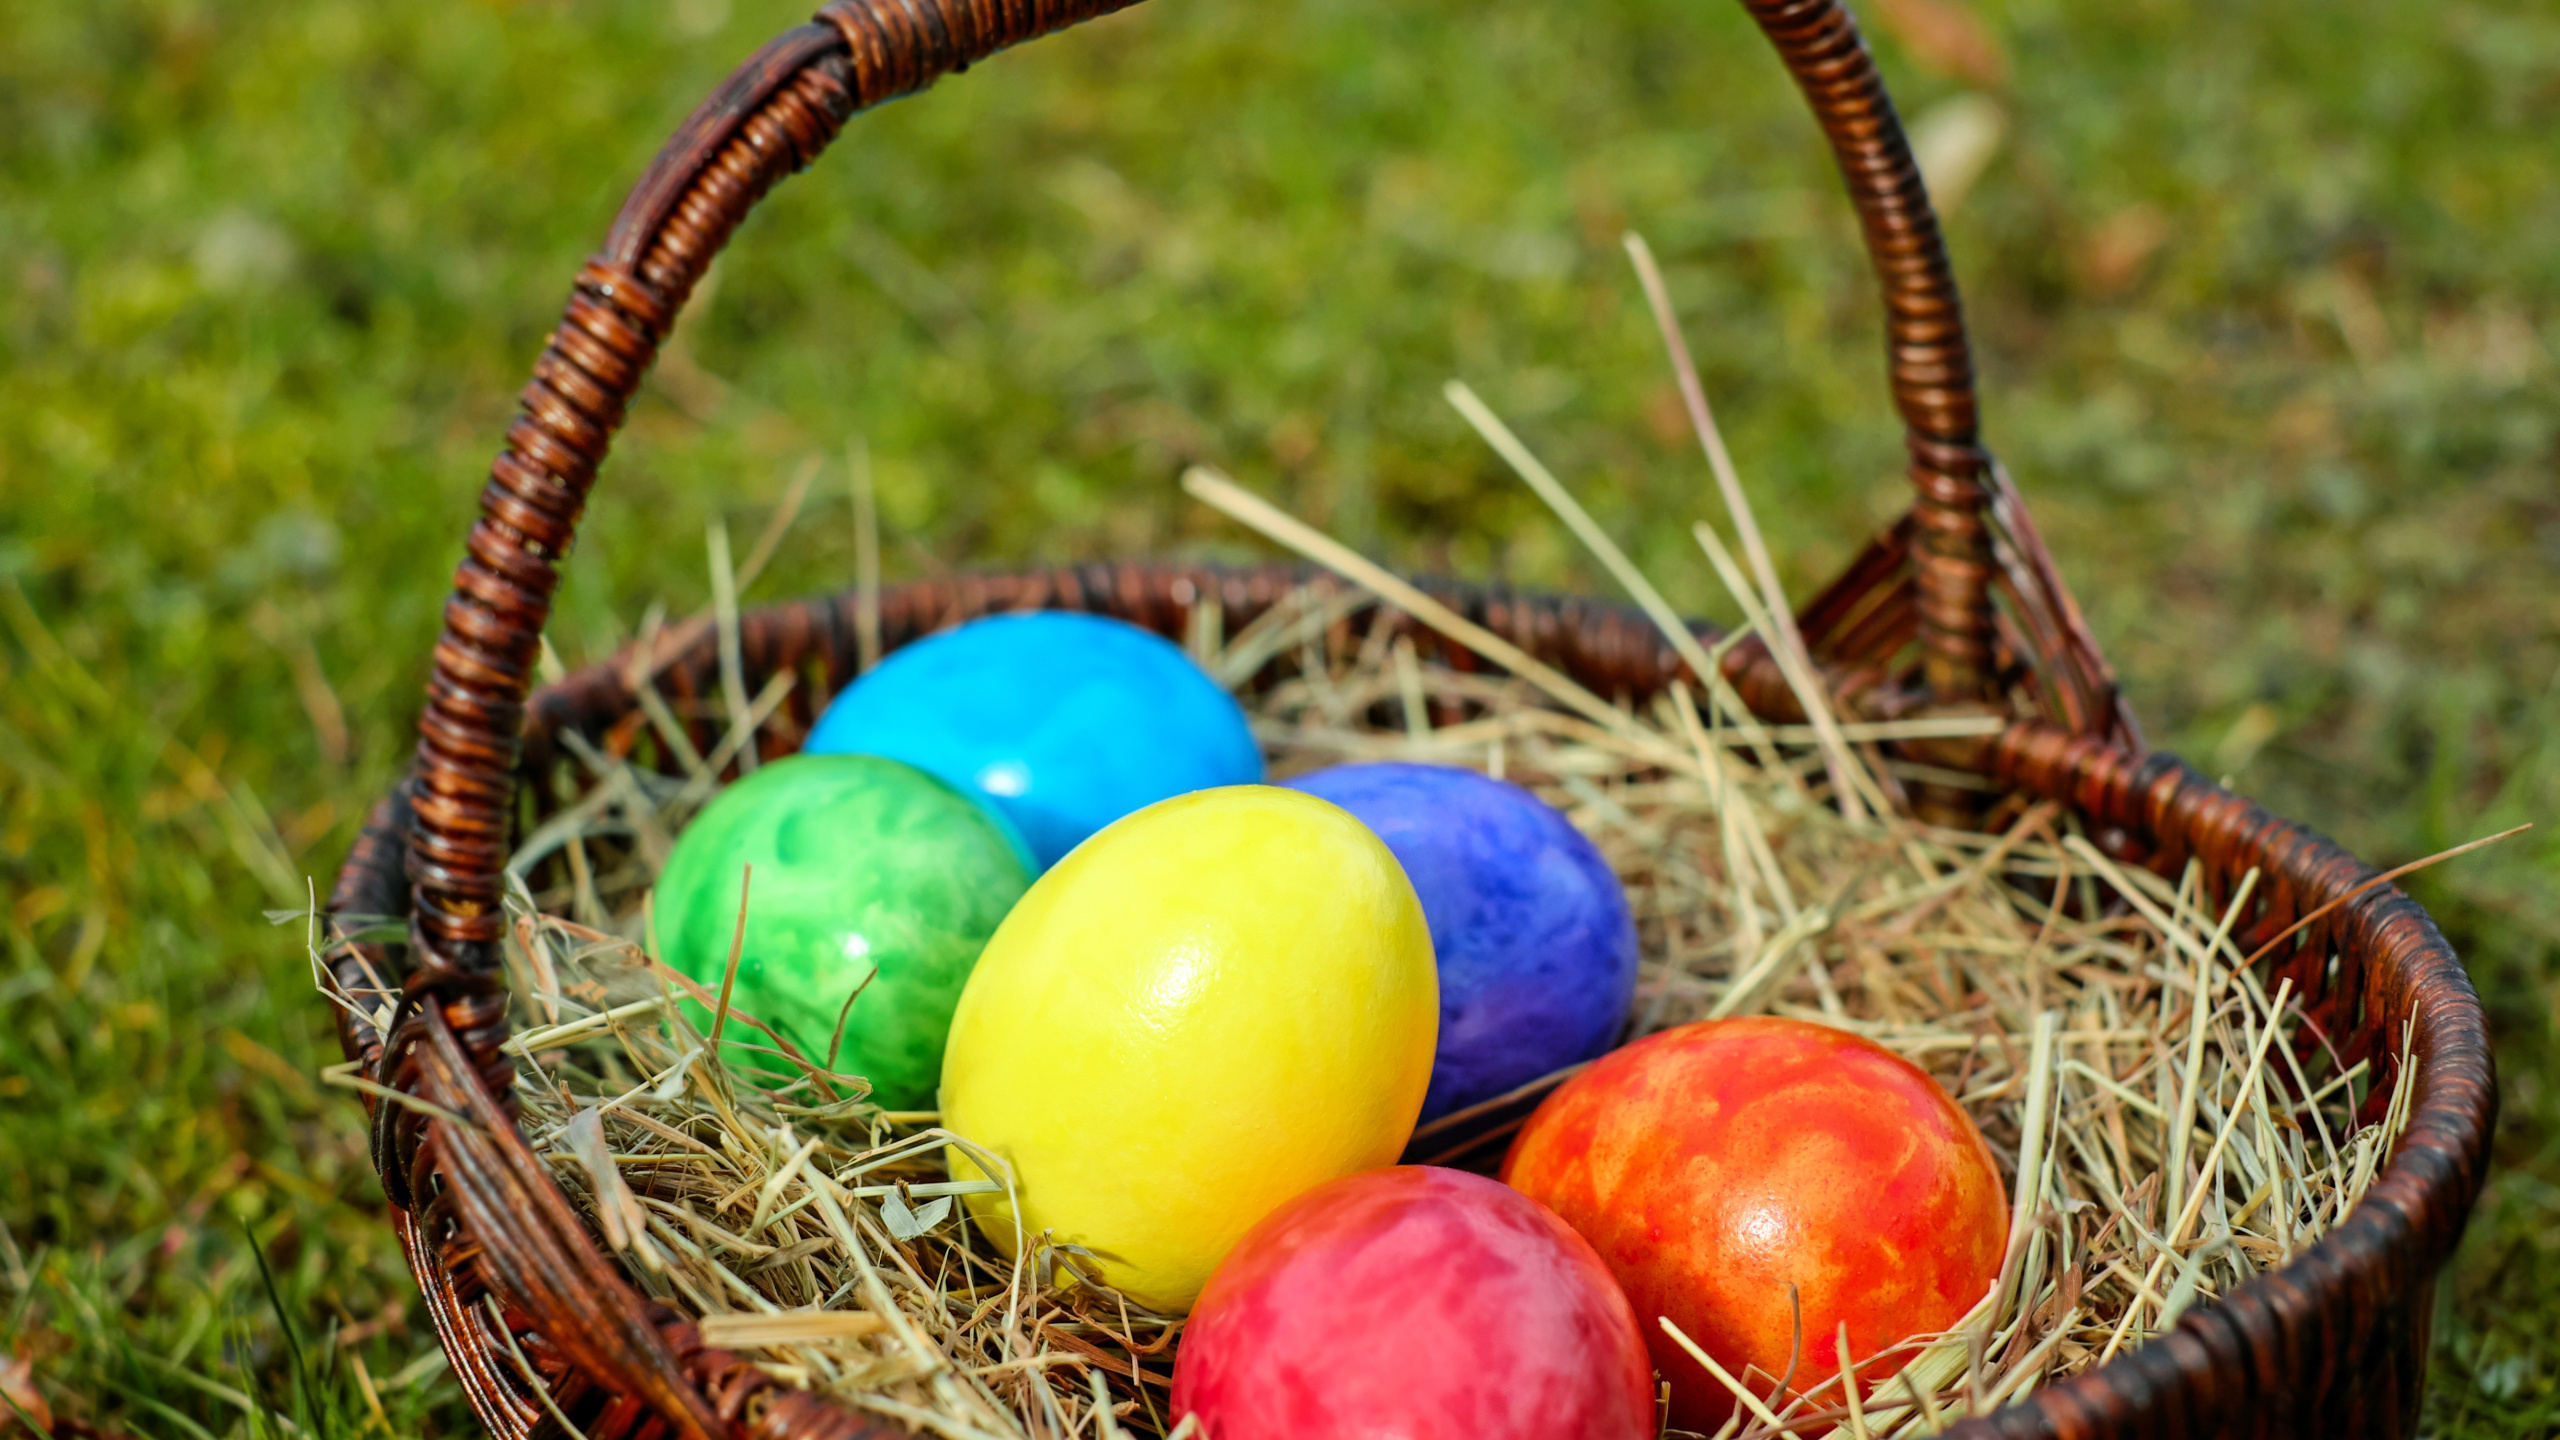 复活节兔子, 复活节彩蛋, 假日, 复活节篮子, 篮子里 壁纸 2560x1440 允许